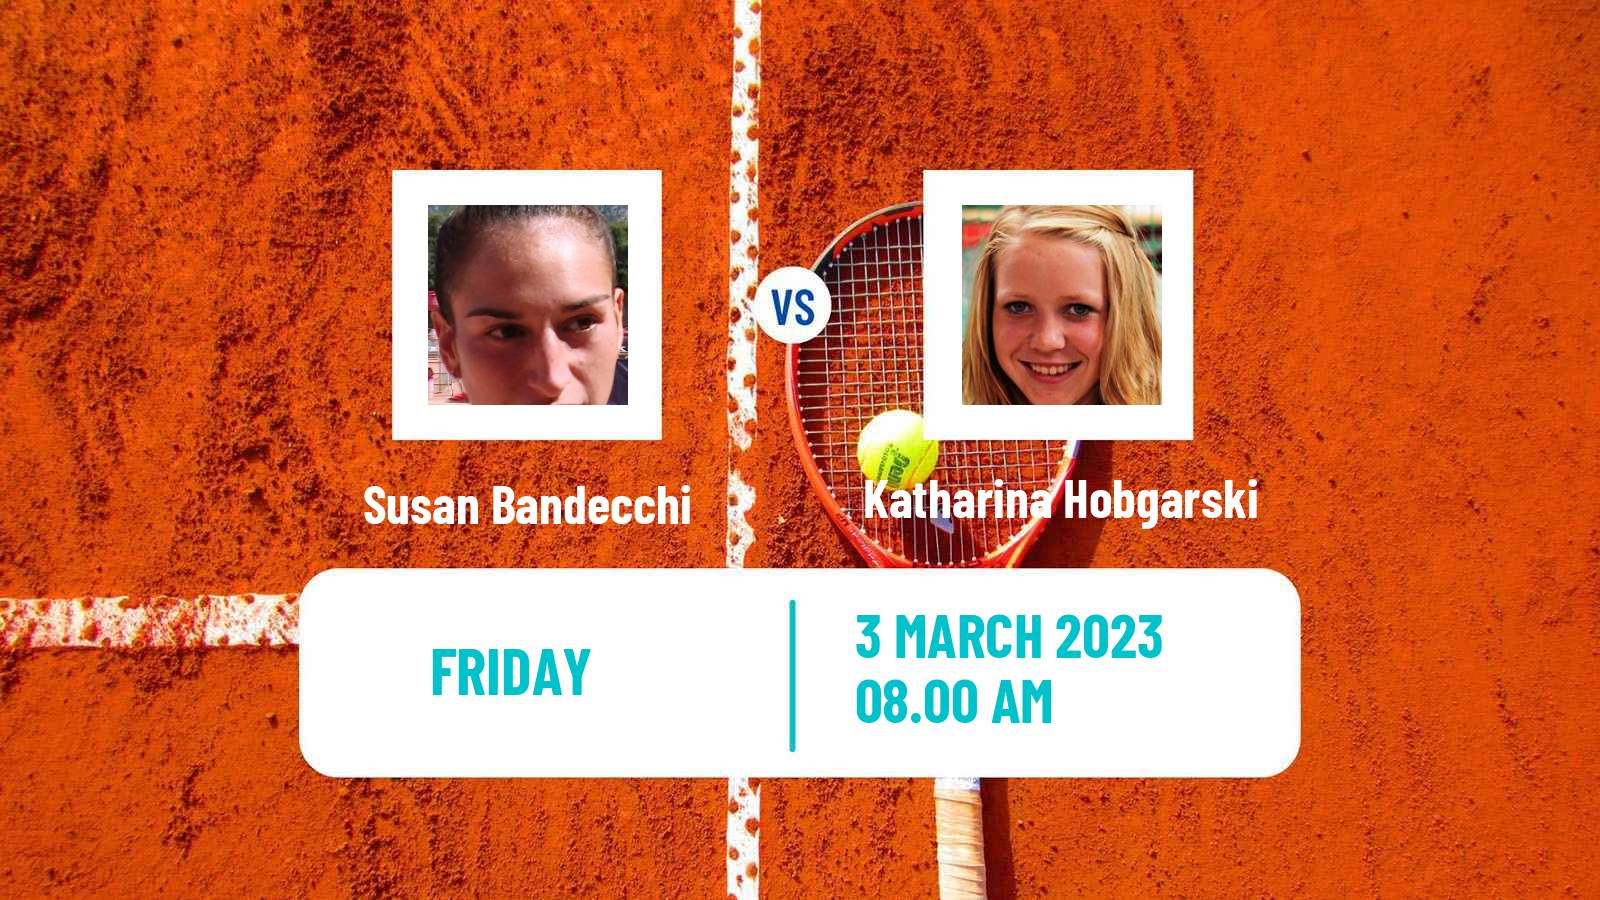 Tennis ITF Tournaments Susan Bandecchi - Katharina Hobgarski